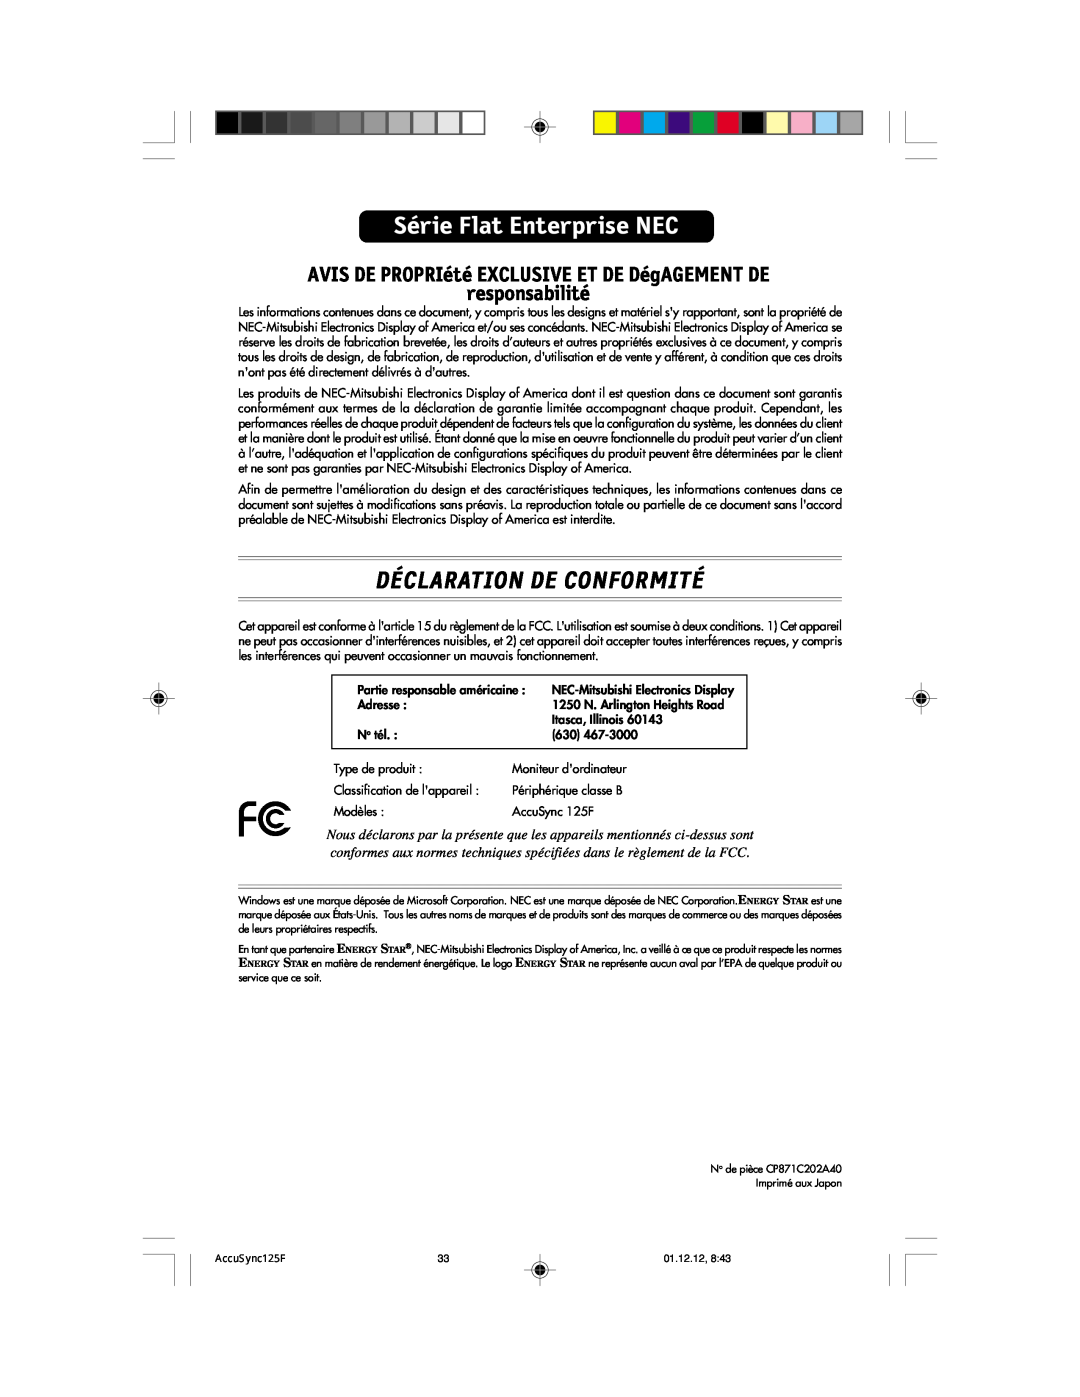 NEC 125F user manual Déclaration De Conformité, Série Flat Enterprise NEC 